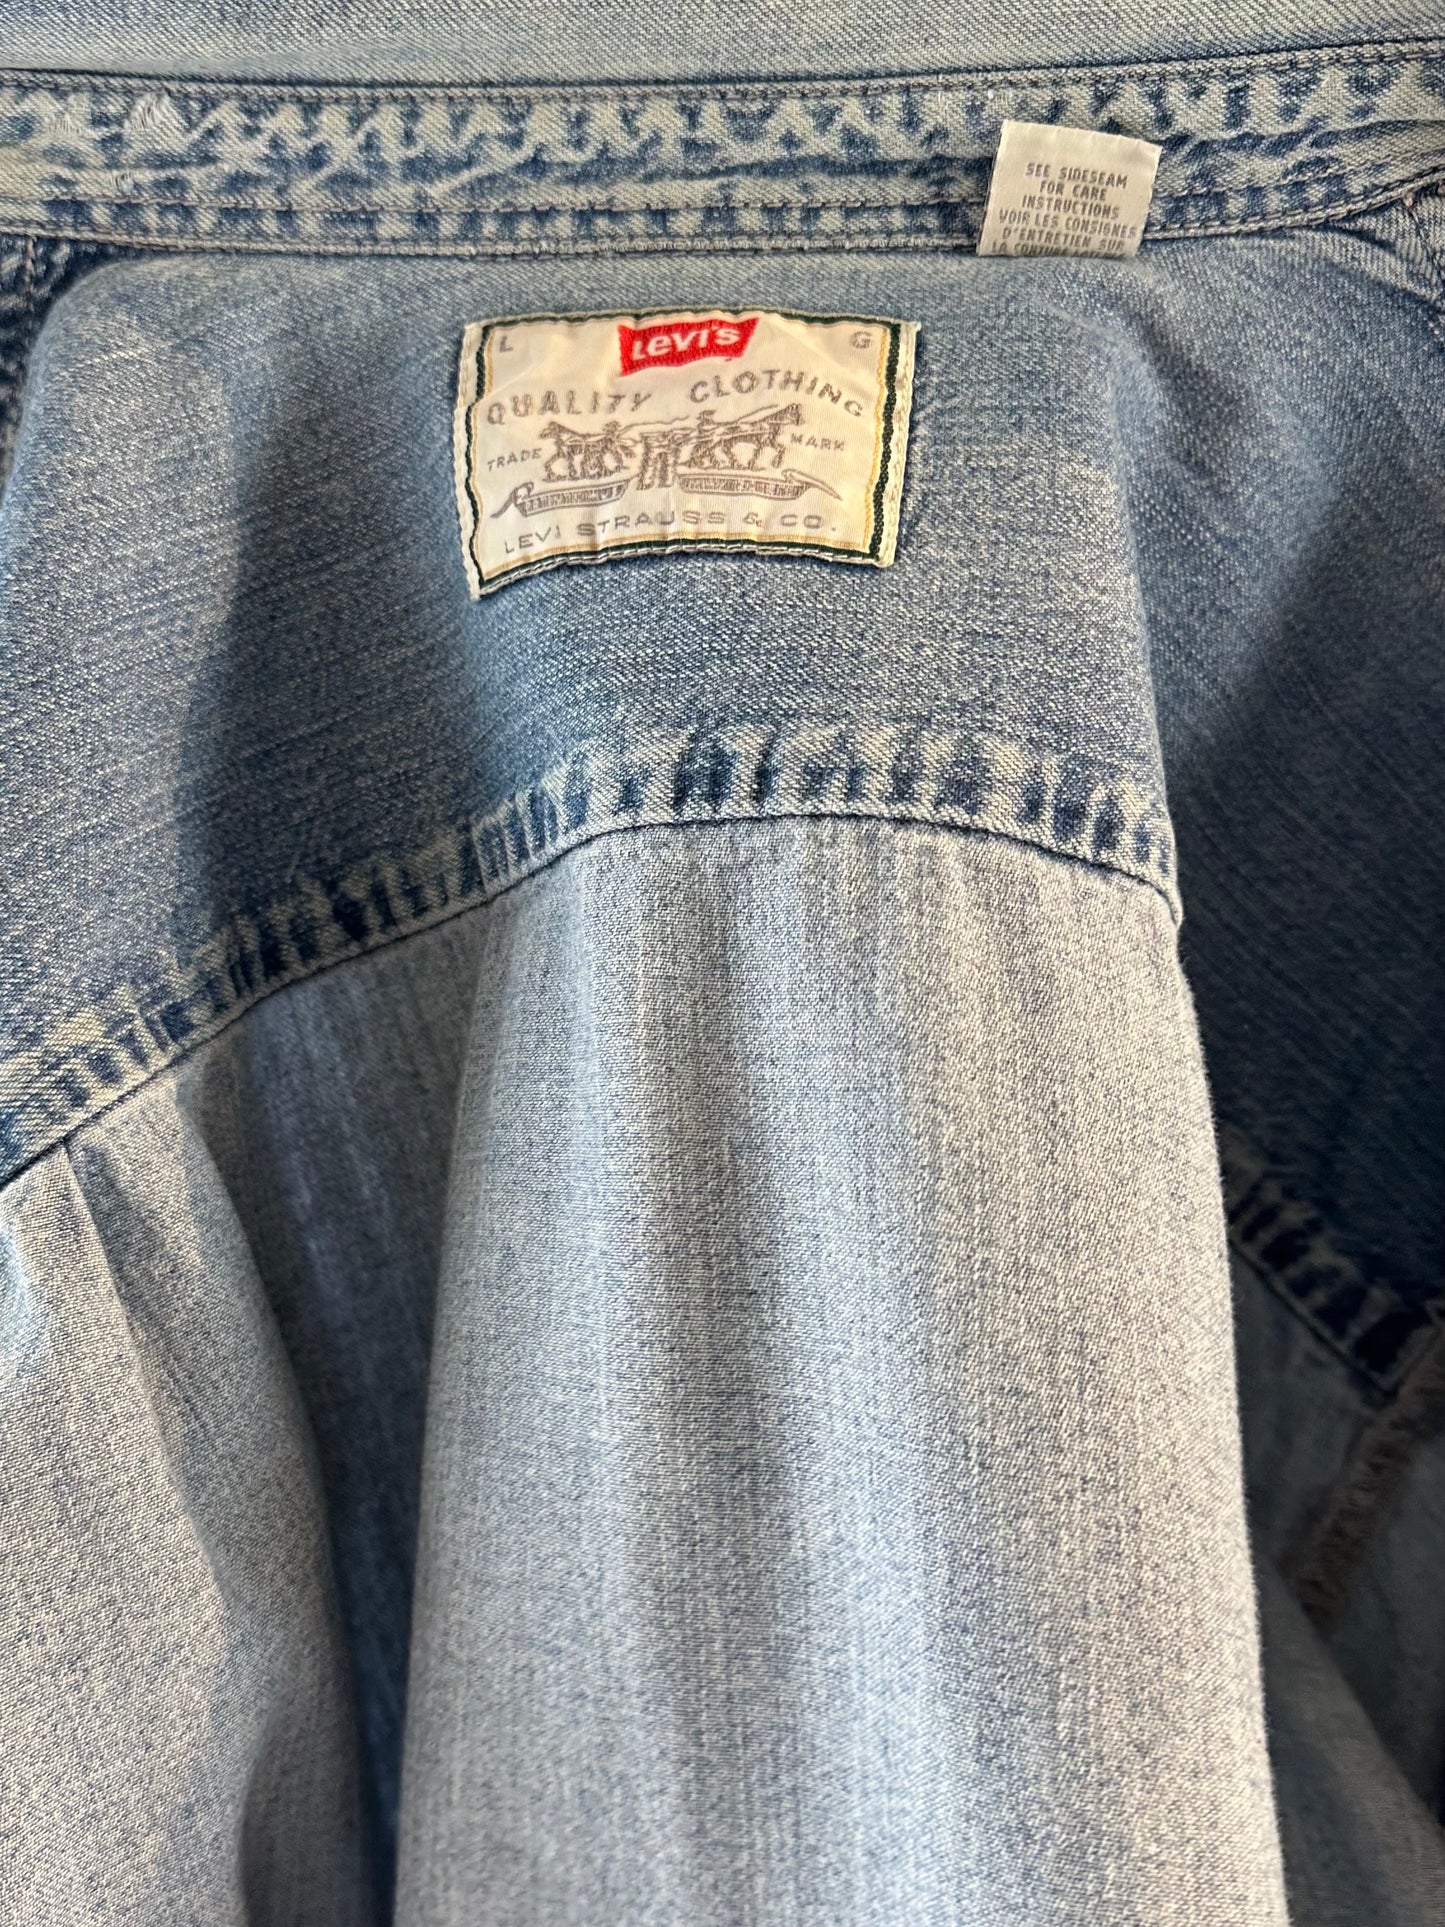 Vintage 'Levis' Button Up Denim Shirt / Large